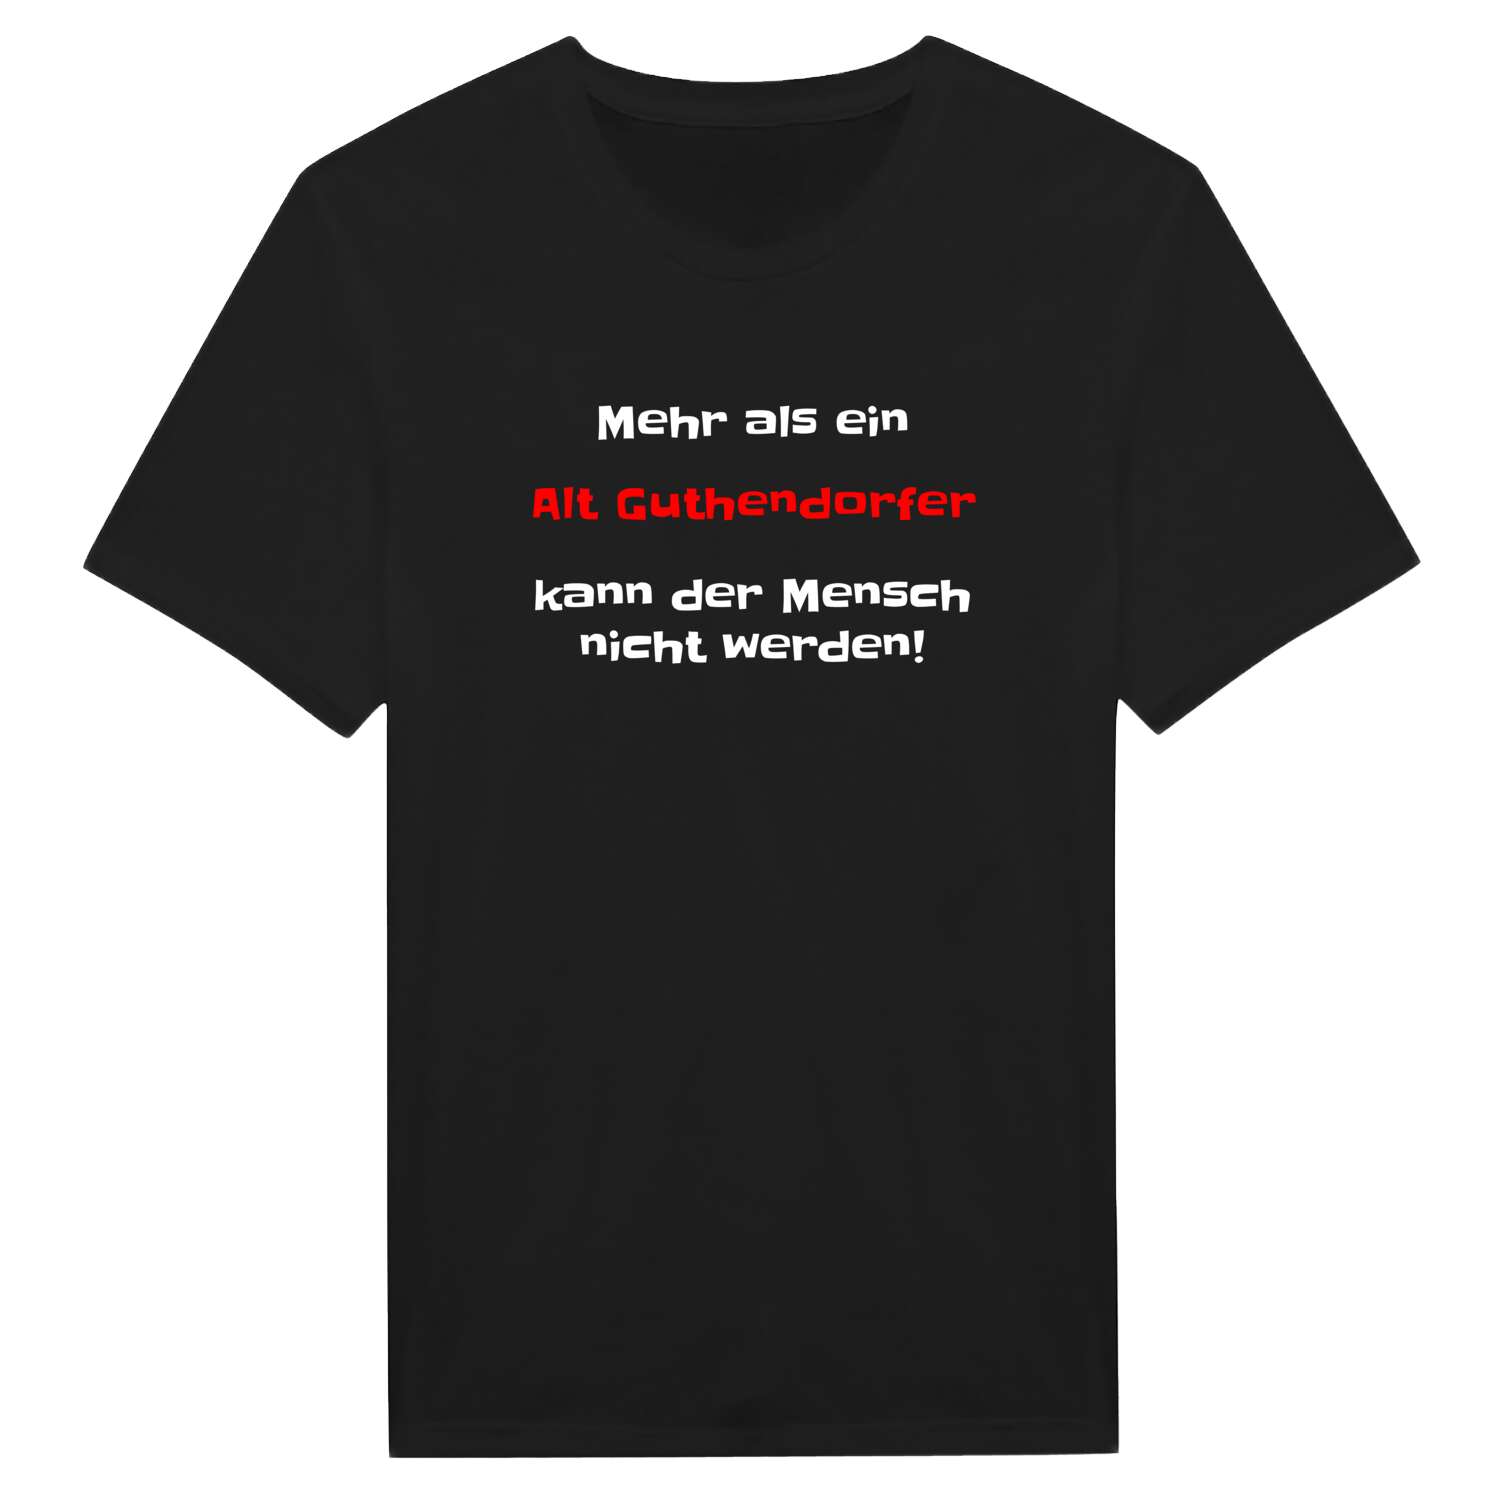 Alt Guthendorf T-Shirt »Mehr als ein«